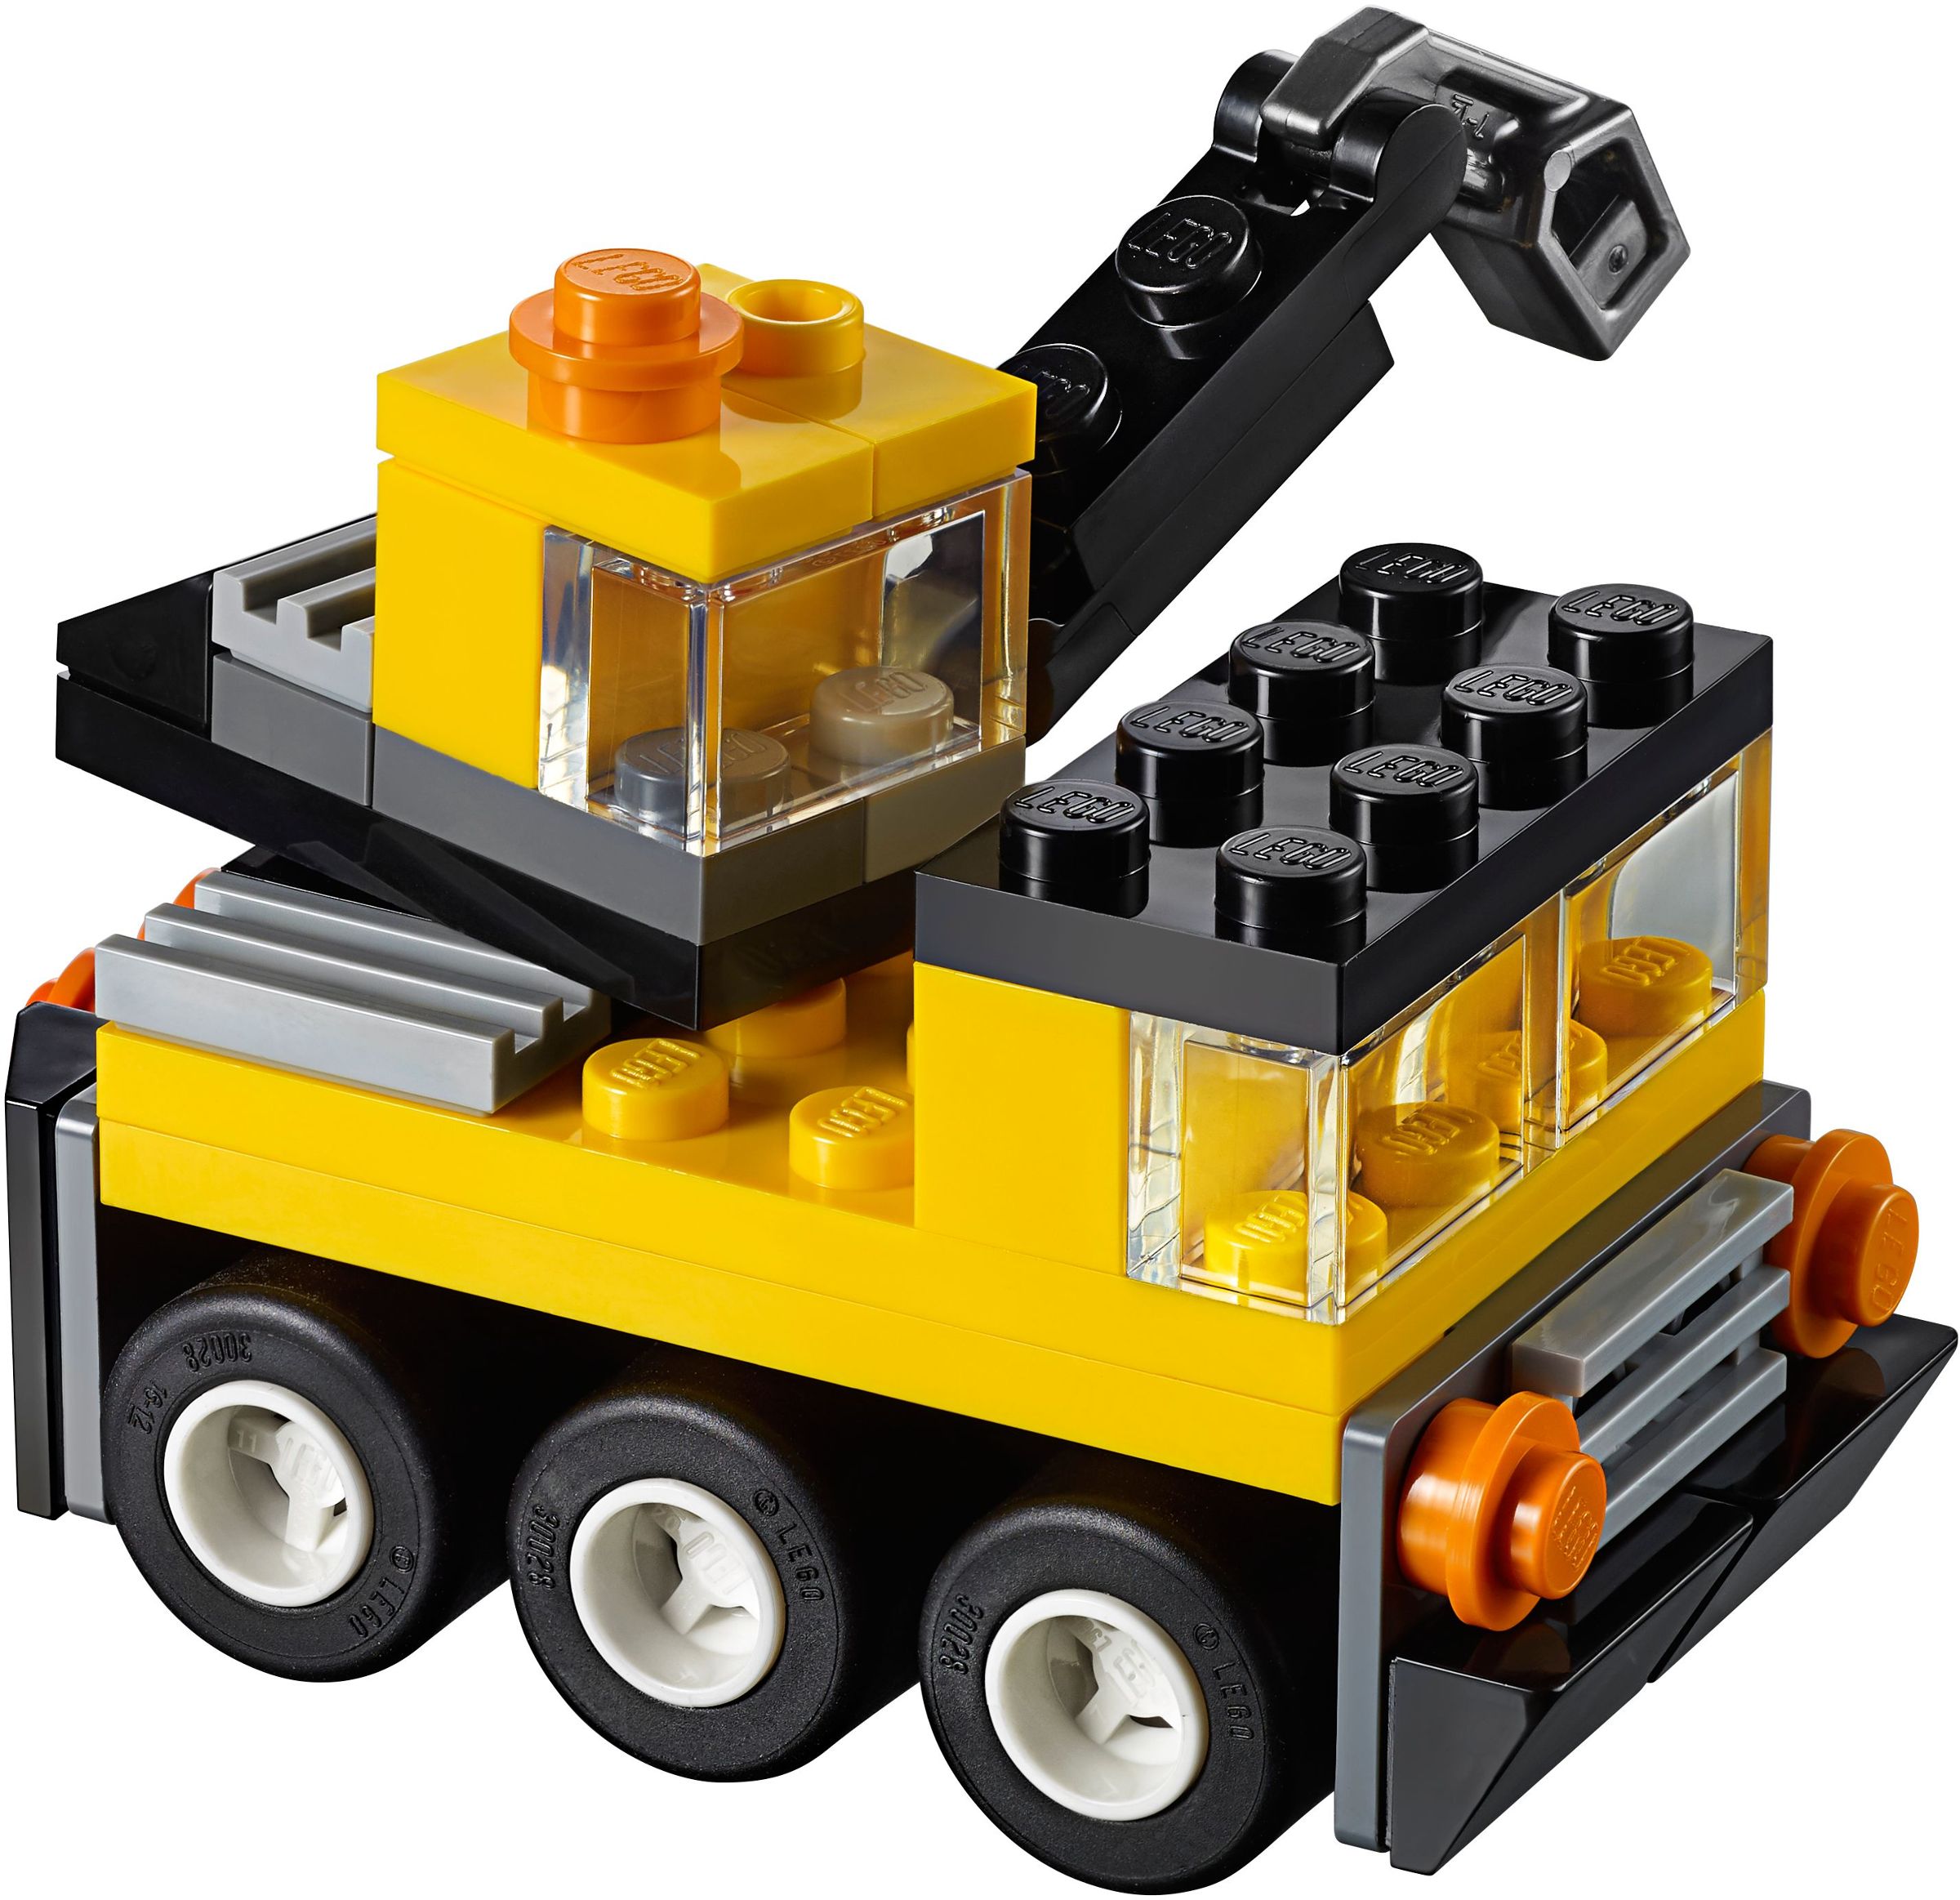 lego mini build february 2019